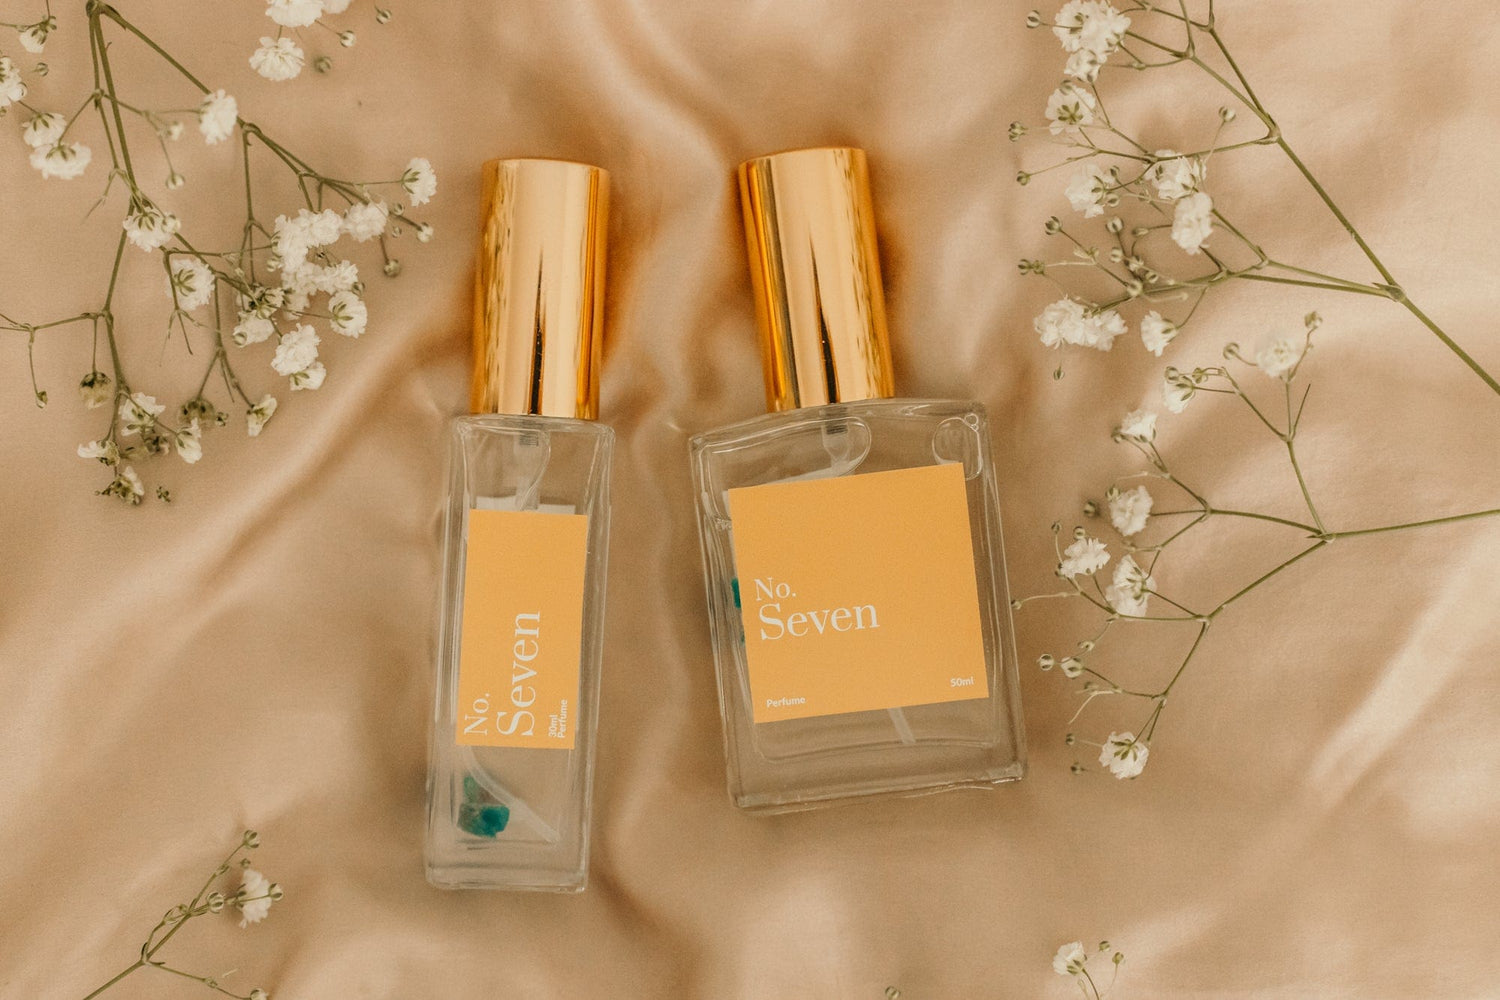 Bottled Perfume